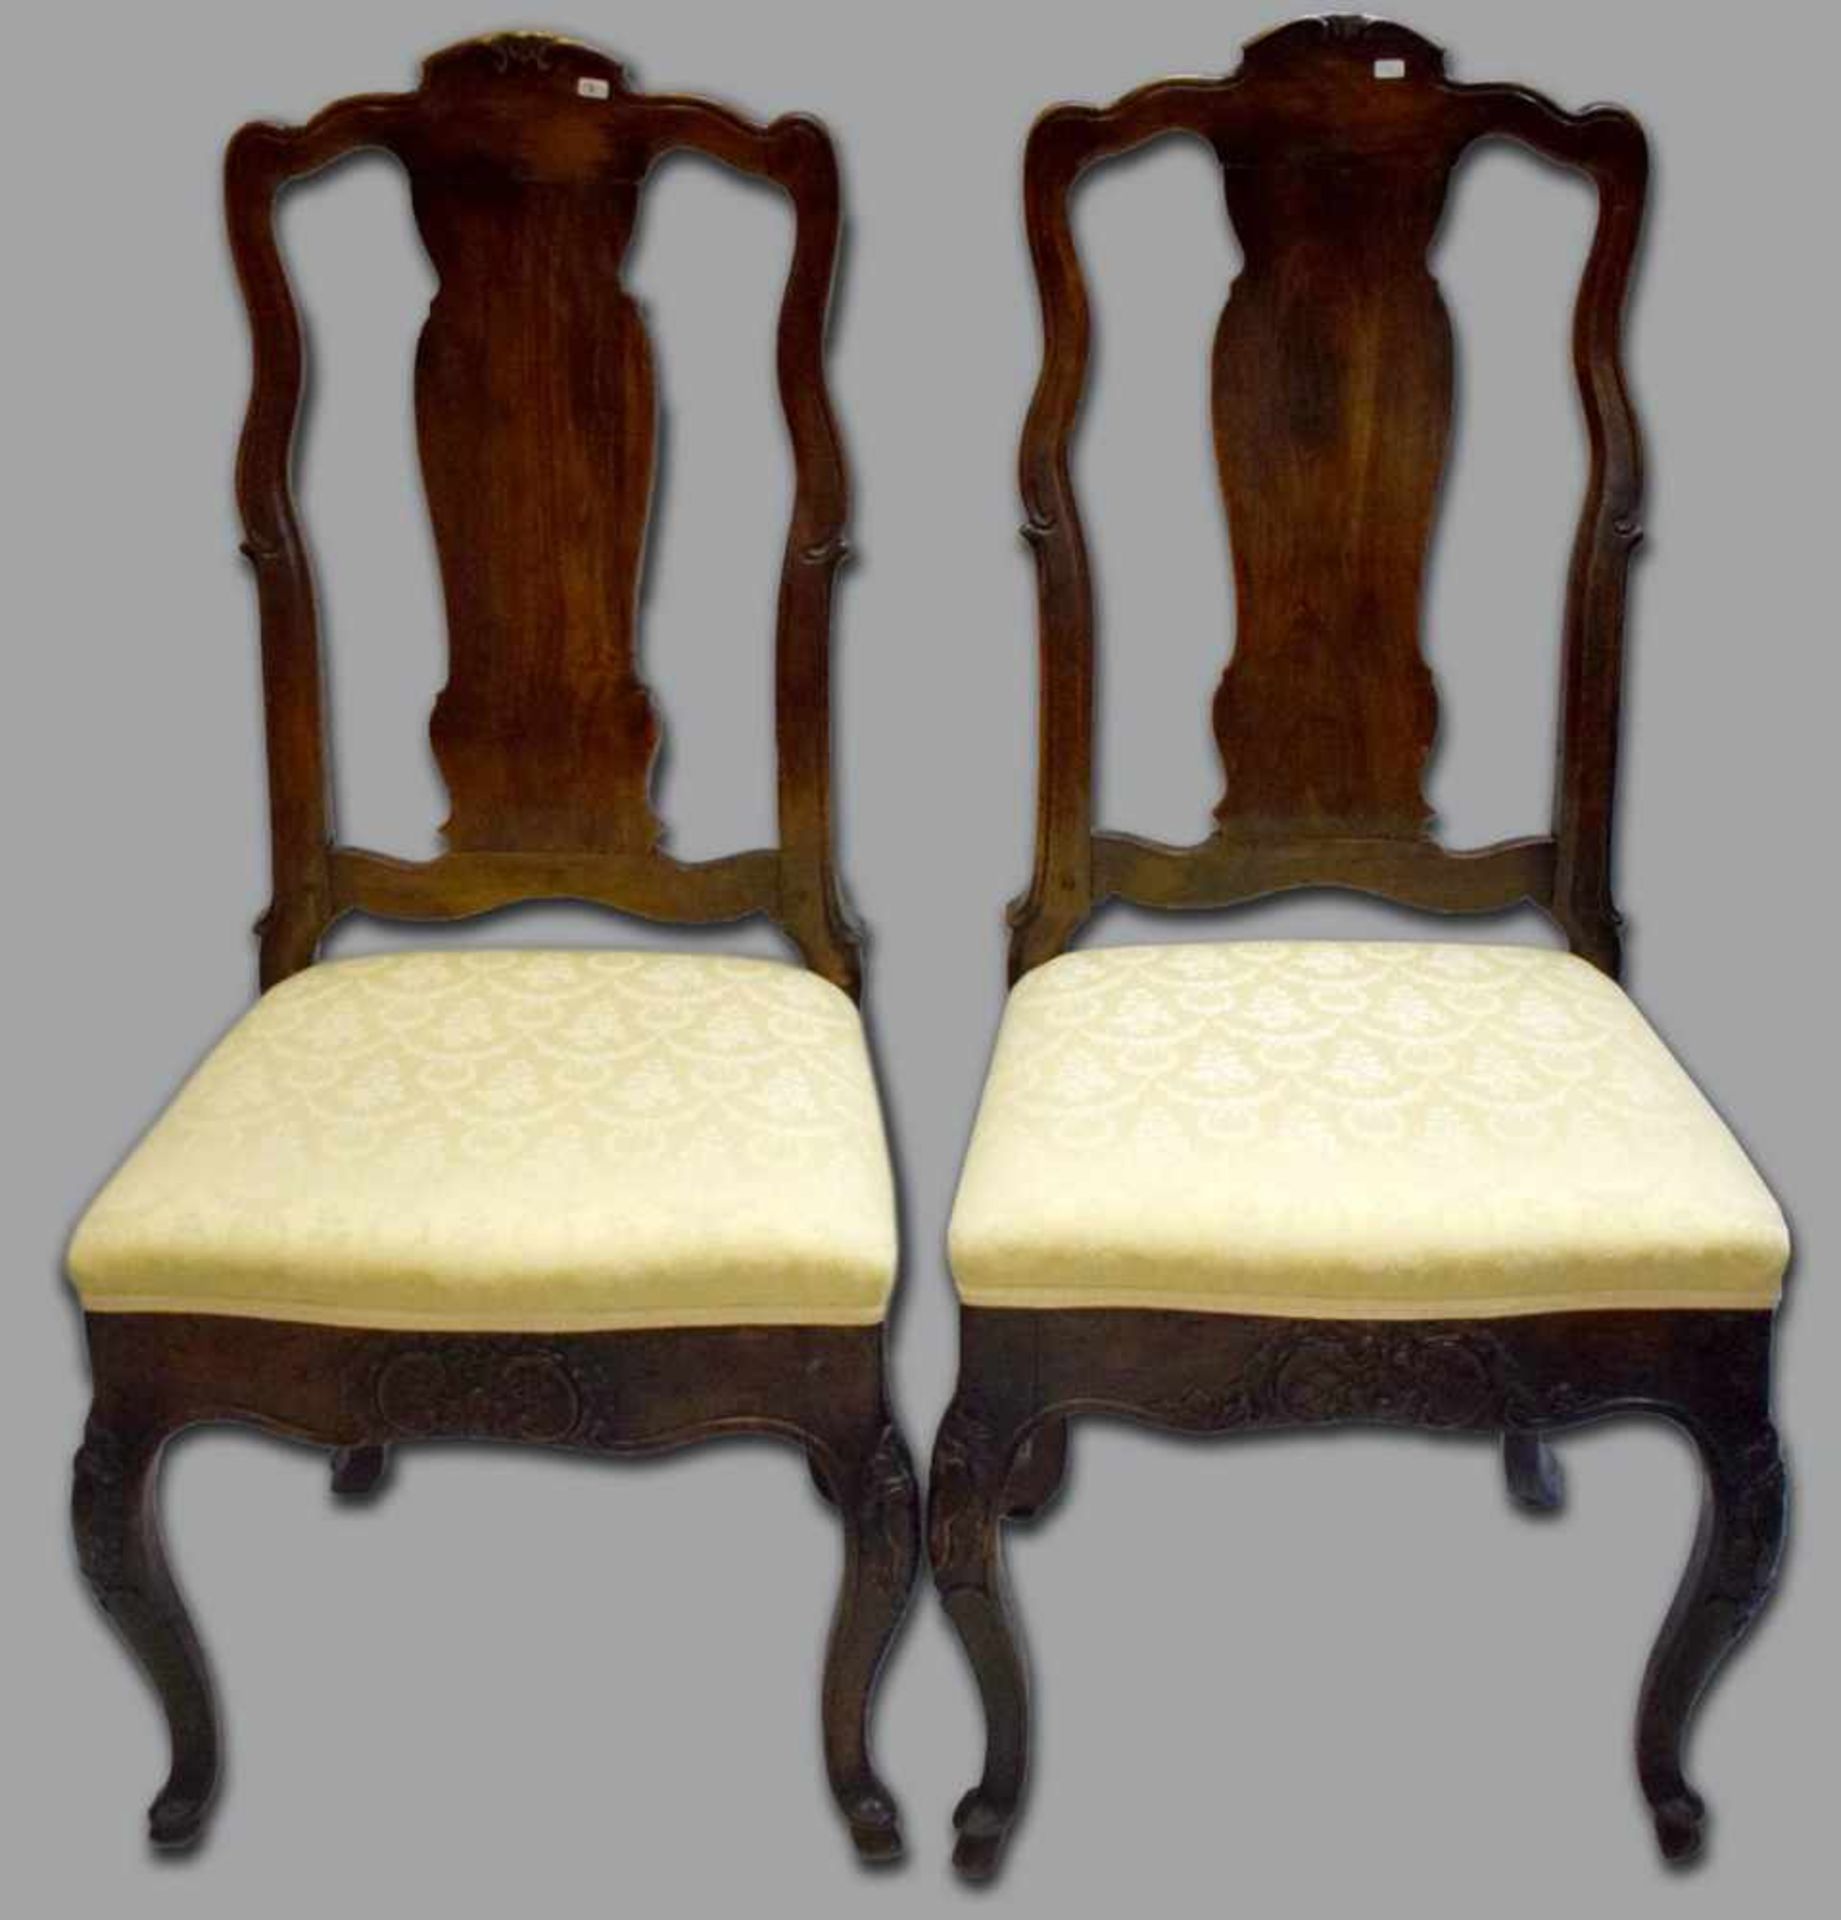 Paar Barock-StühleHartholz, vier geschnitzte Beine, geschnitzte Zarge, leicht gebauchter Rücken, mit